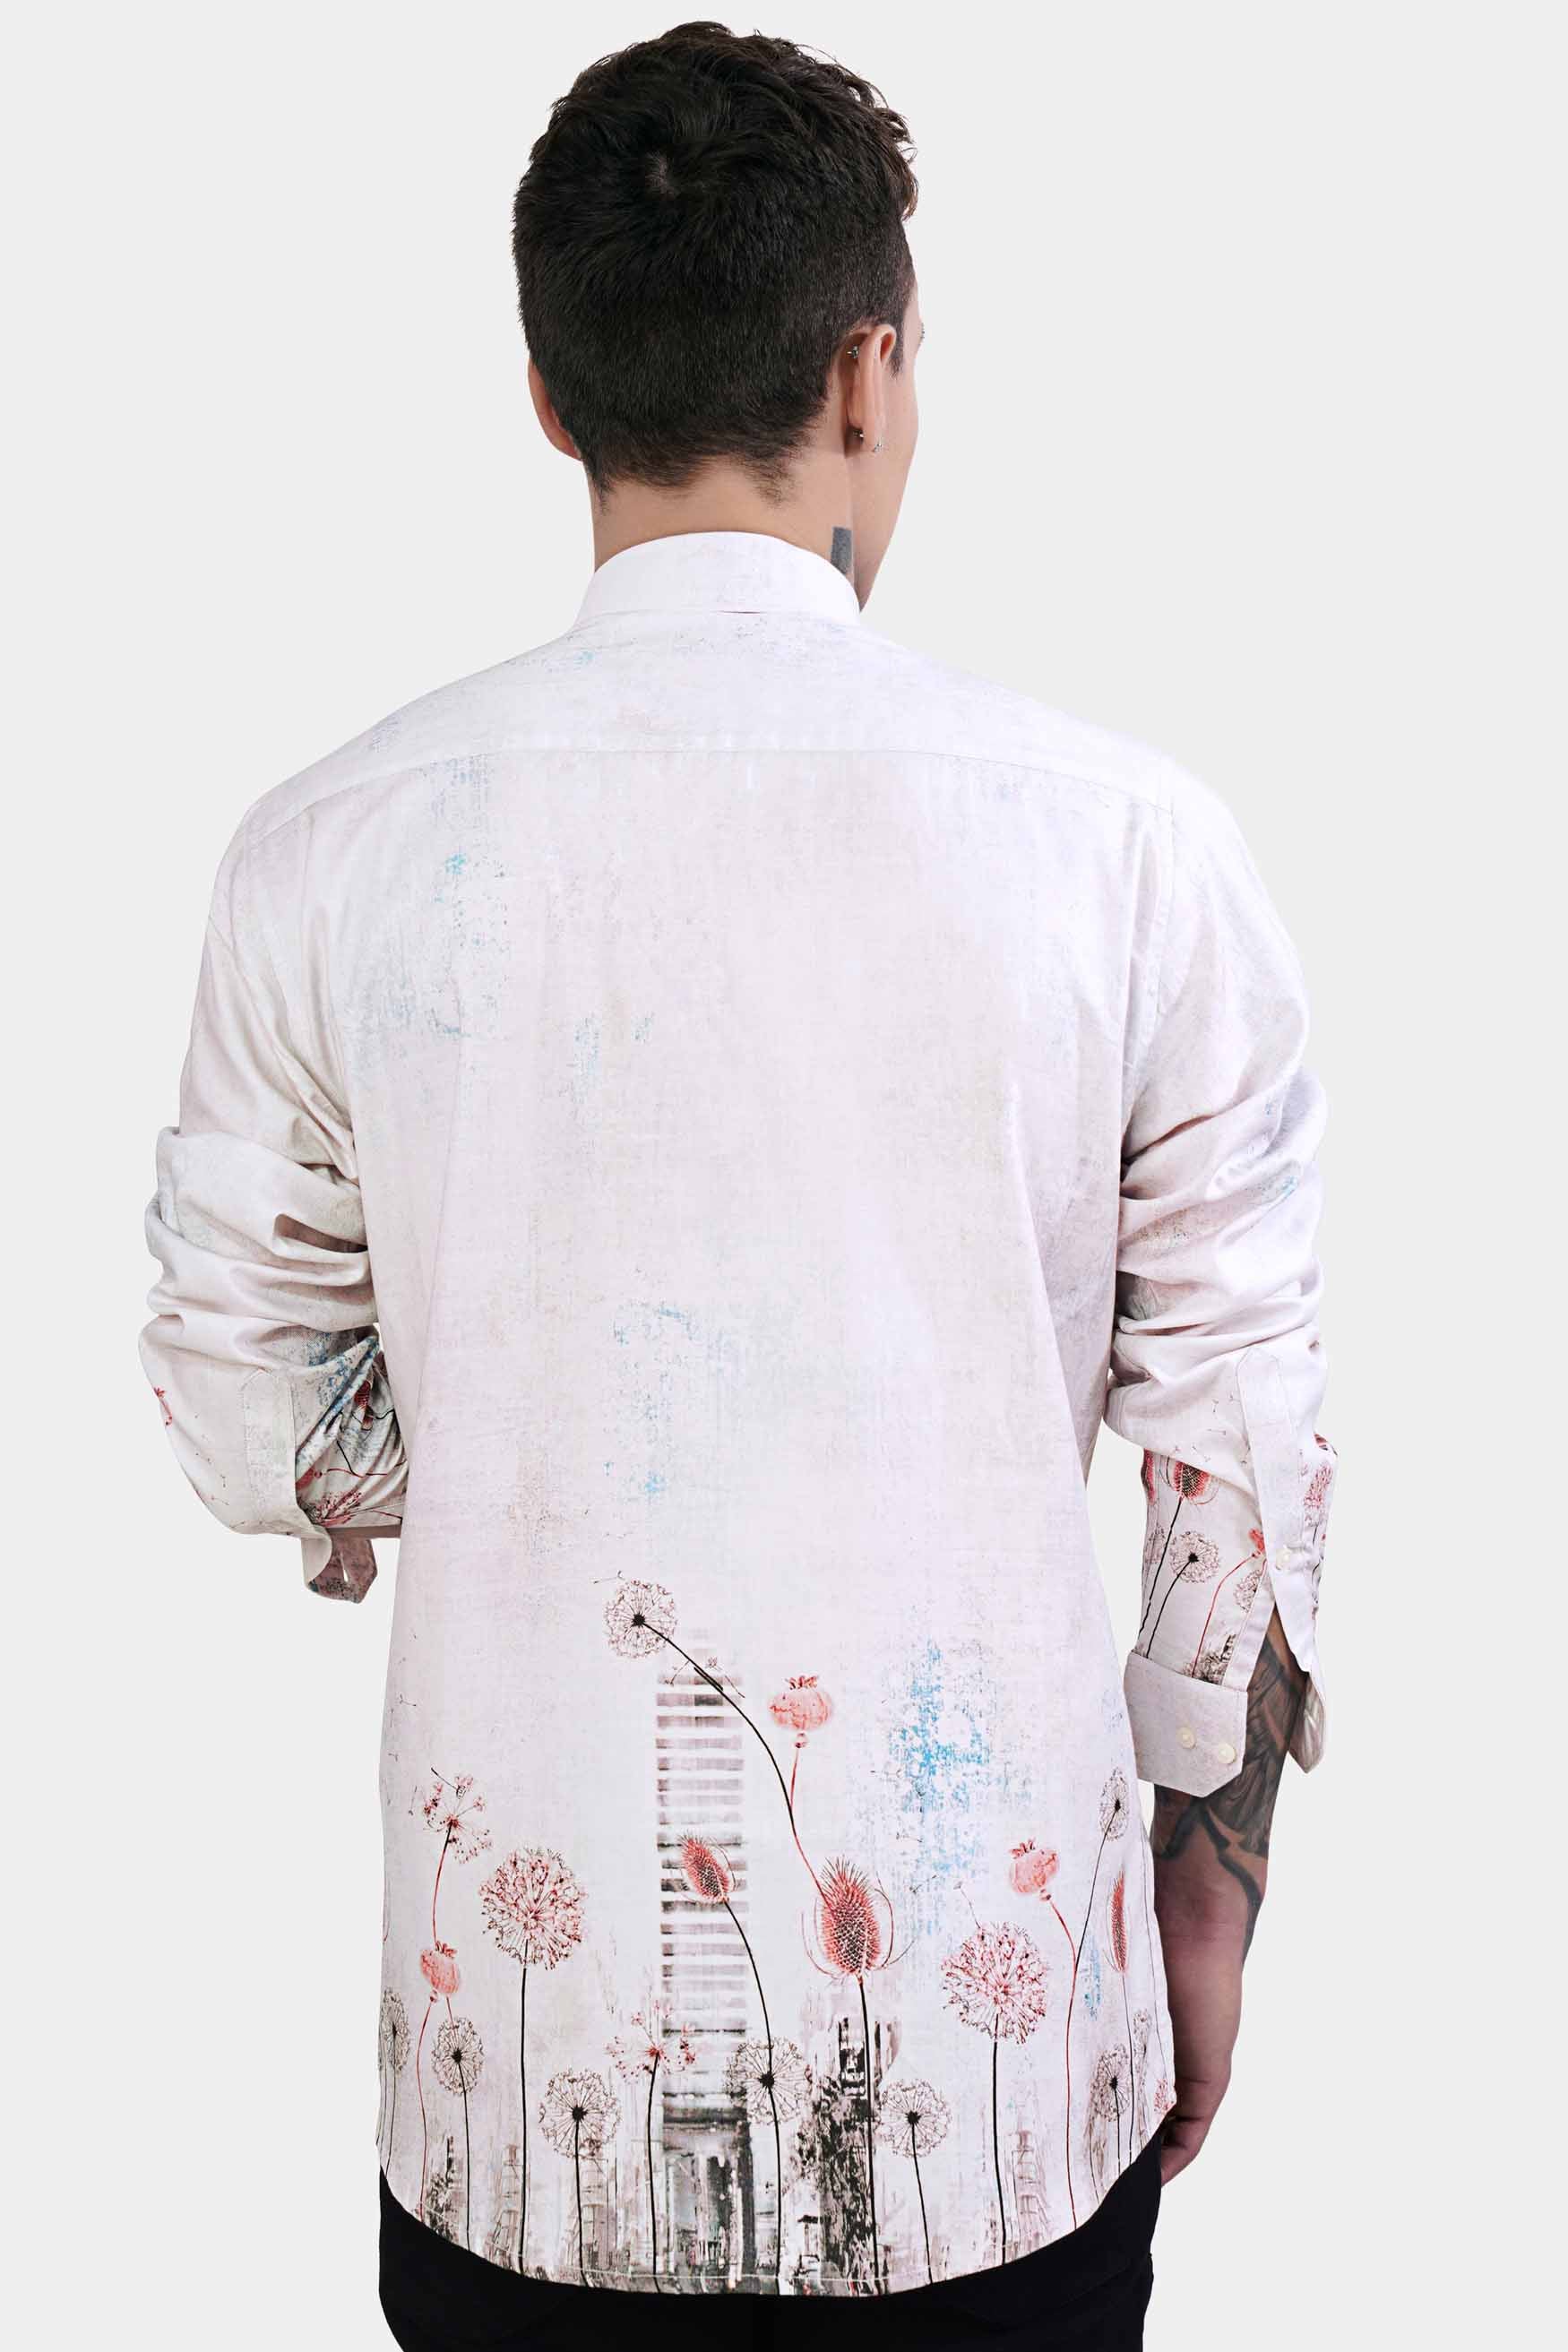 Bon Jour Gray Floral Printed Subtle Sheen Super Soft Premium Cotton Shirt